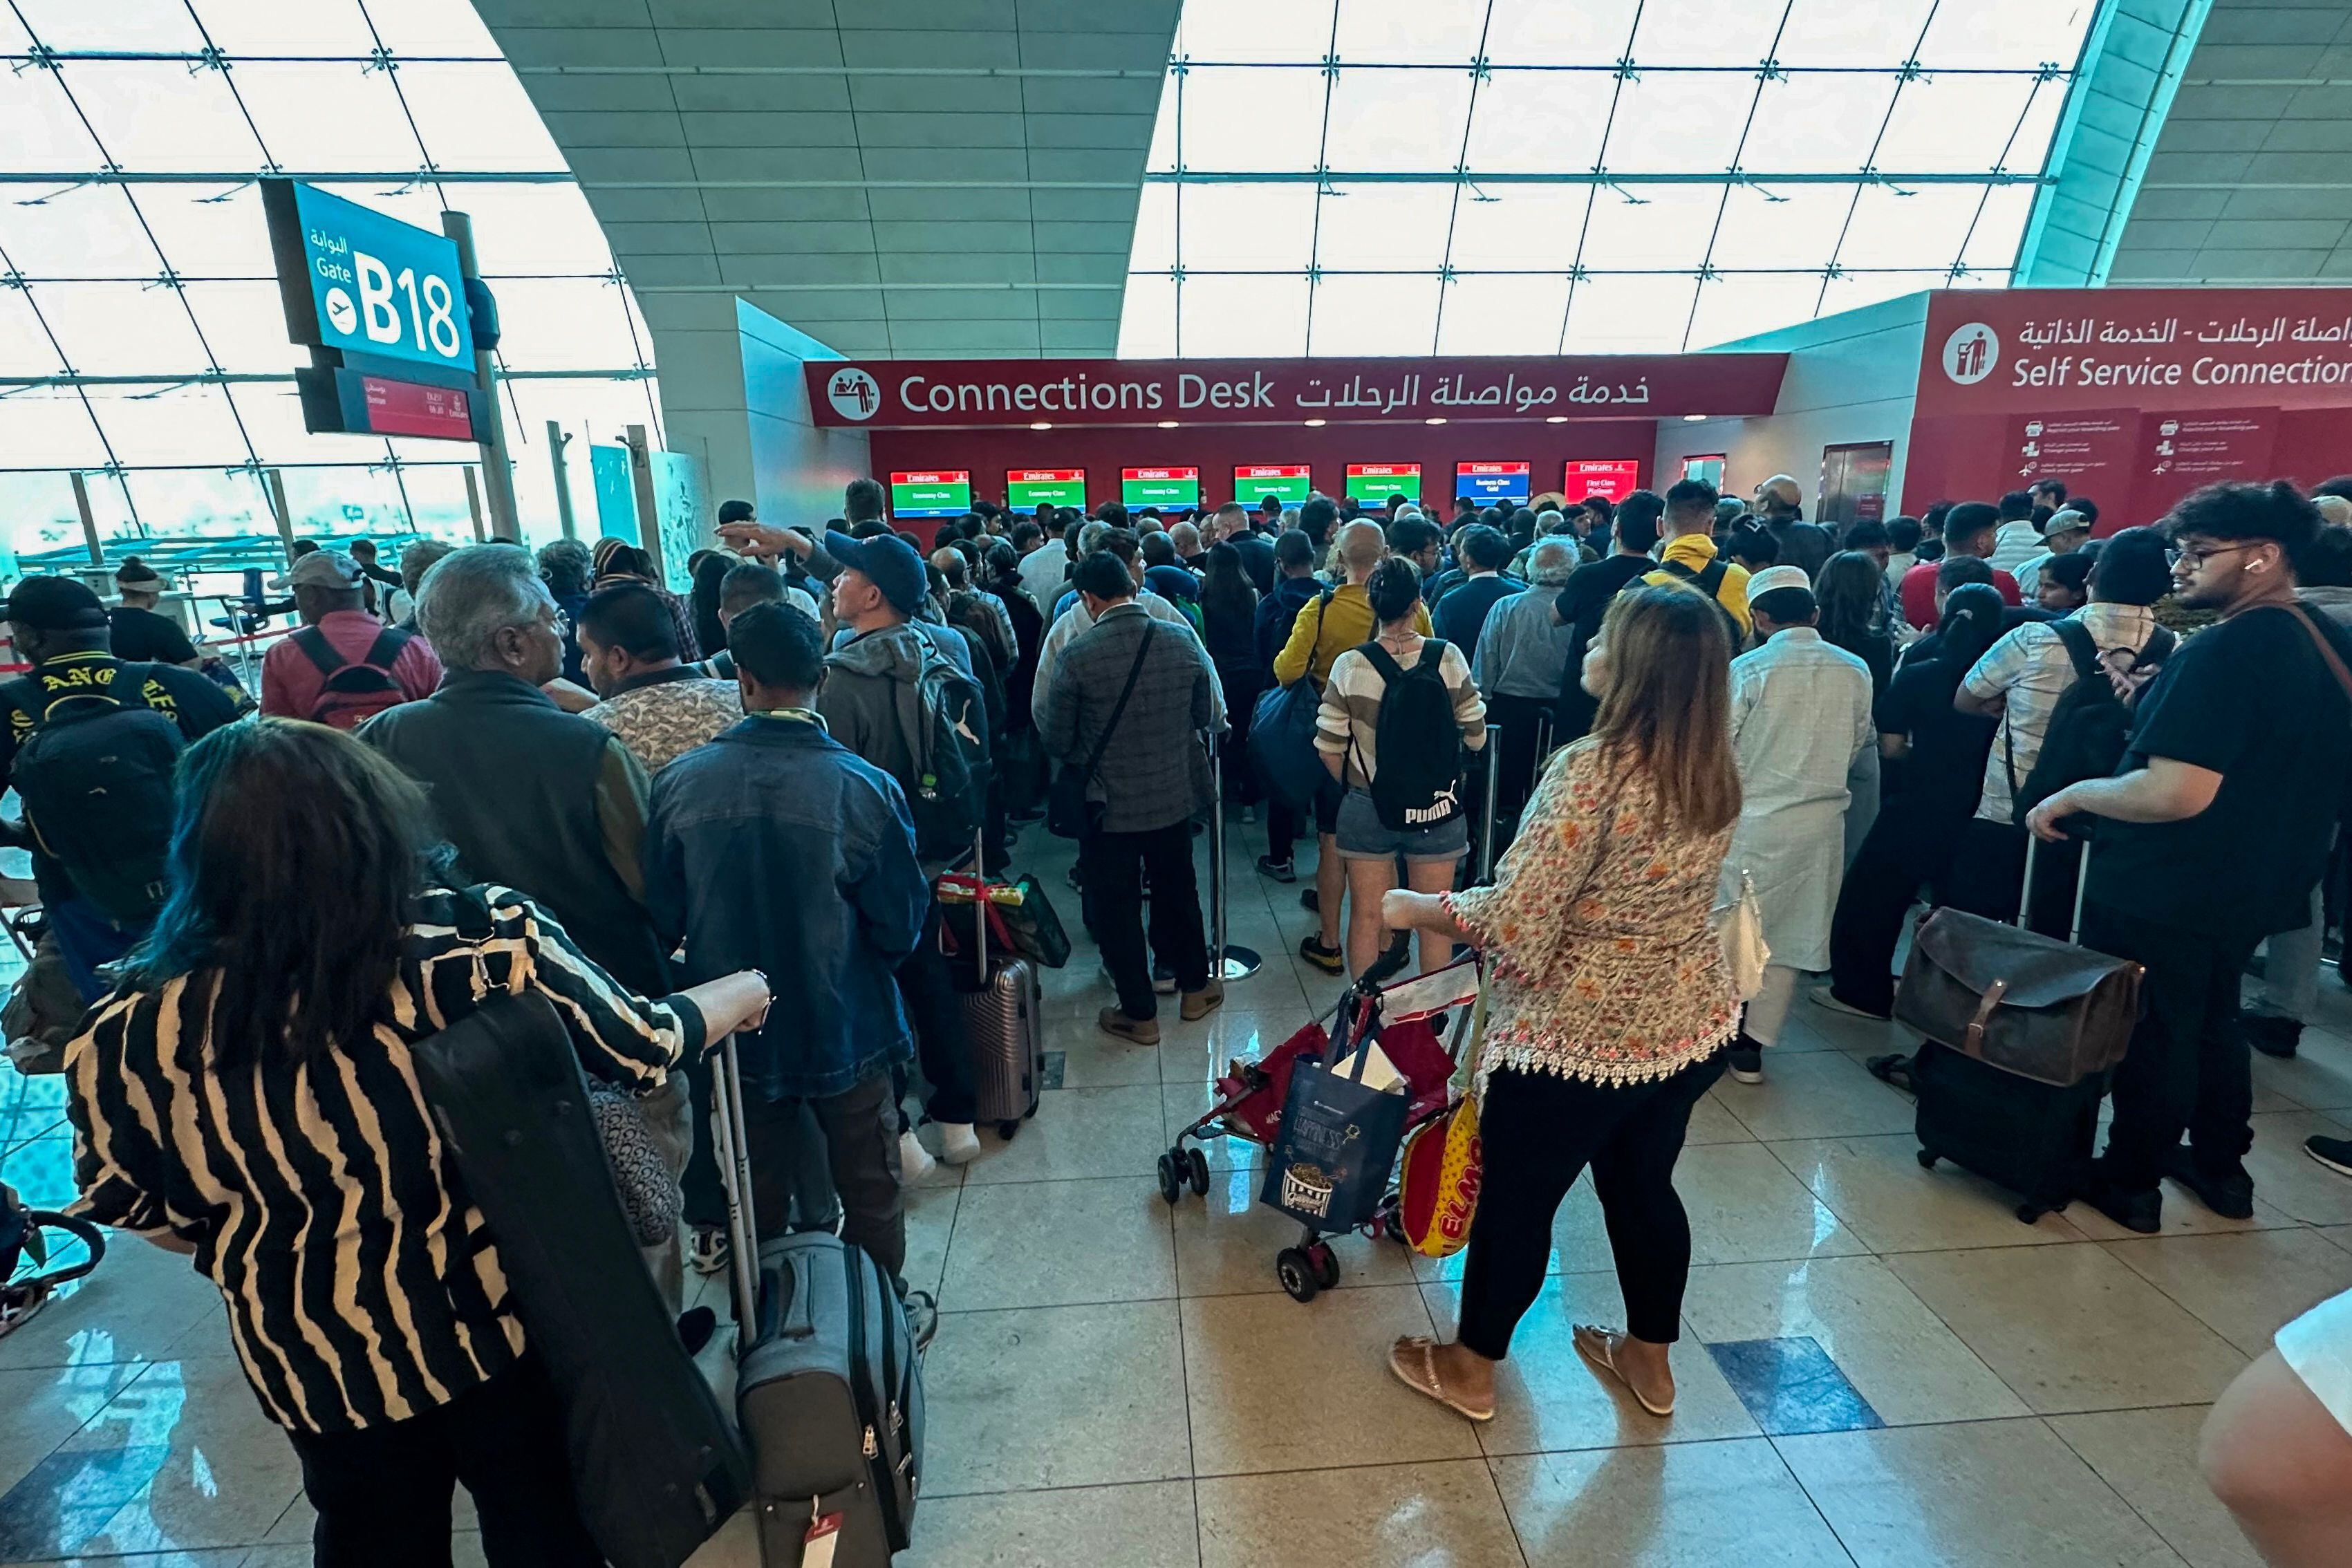 Las lluvias generaron caos en el aeropuerto de Dubái, uno de los más transitados en el mundo, causando retrasos o cancelación en vuelos, afectando a cientos de pasajeros que hasta el miércoles intentaban llegar a sus destinos. 
(Foto de AFP)